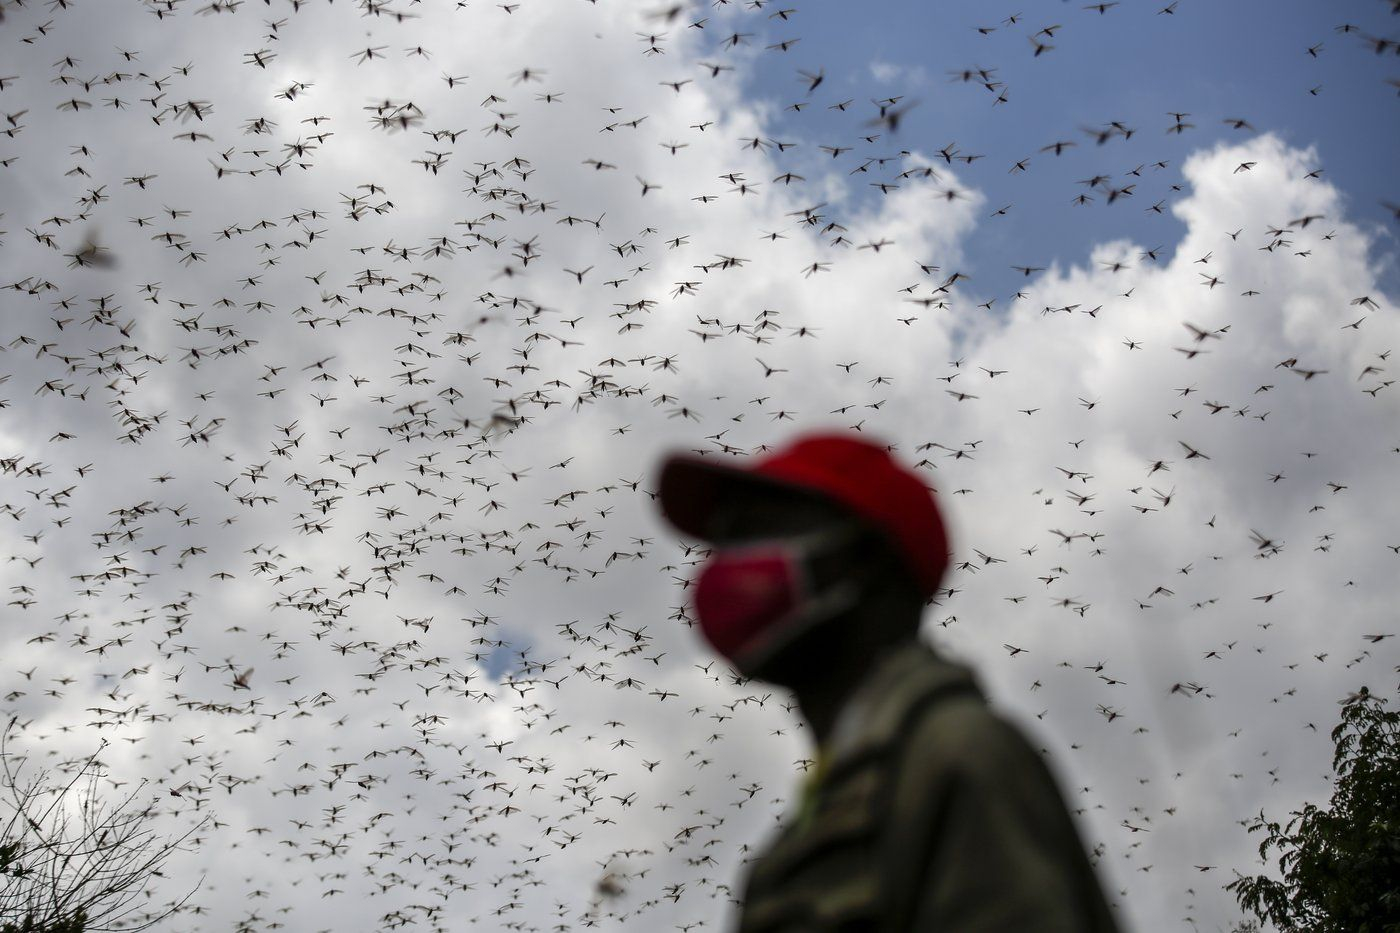 Migratory locust (Locusta migr [IMAGE]